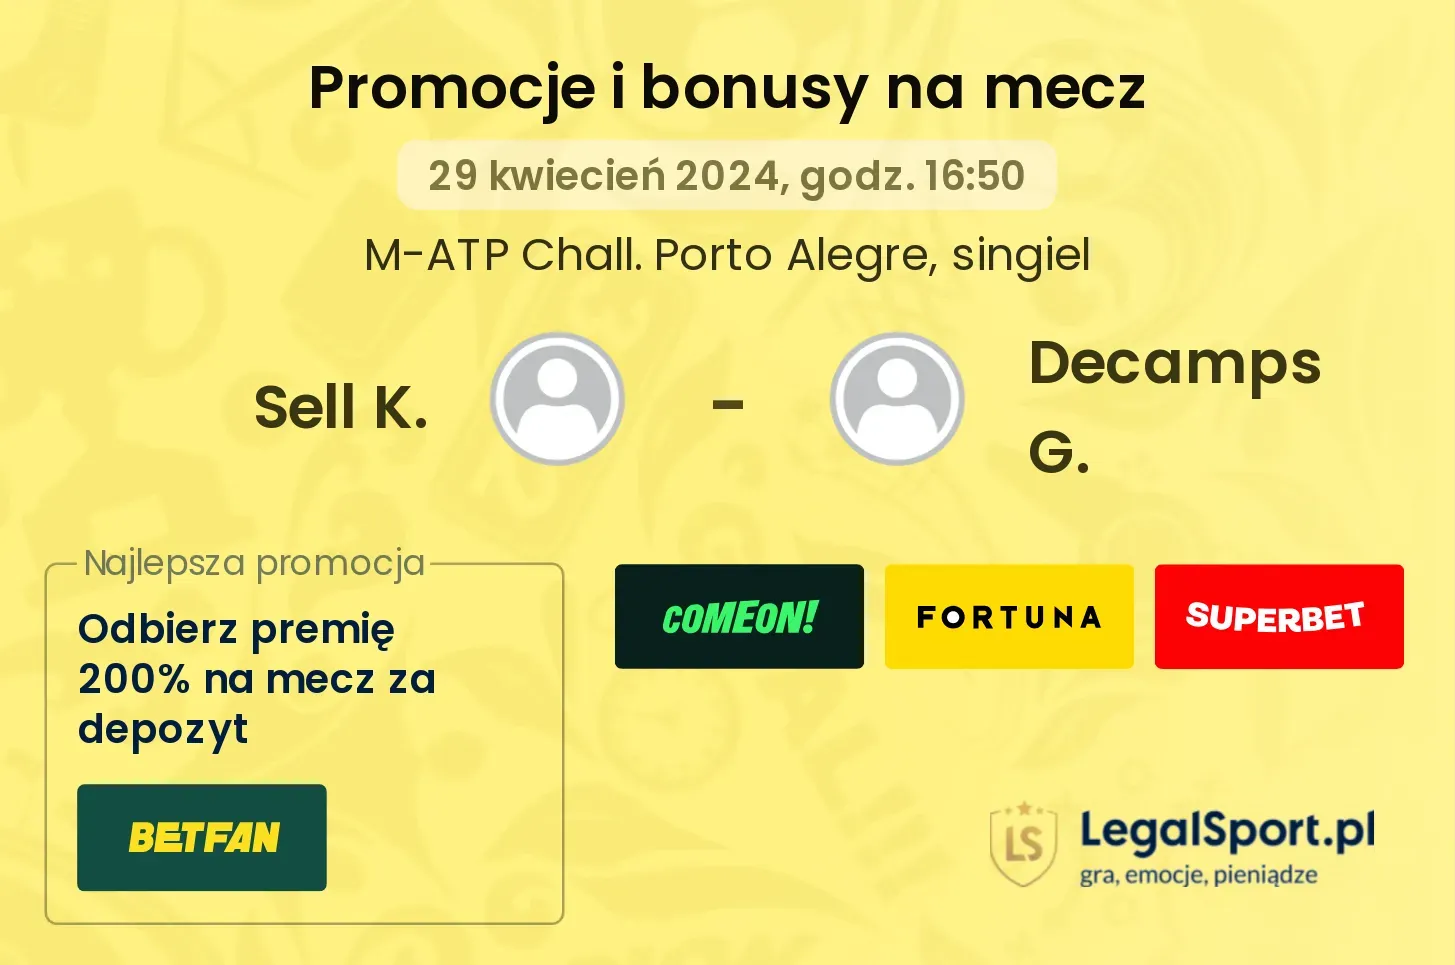 Sell K. - Decamps G. promocje bonusy na mecz